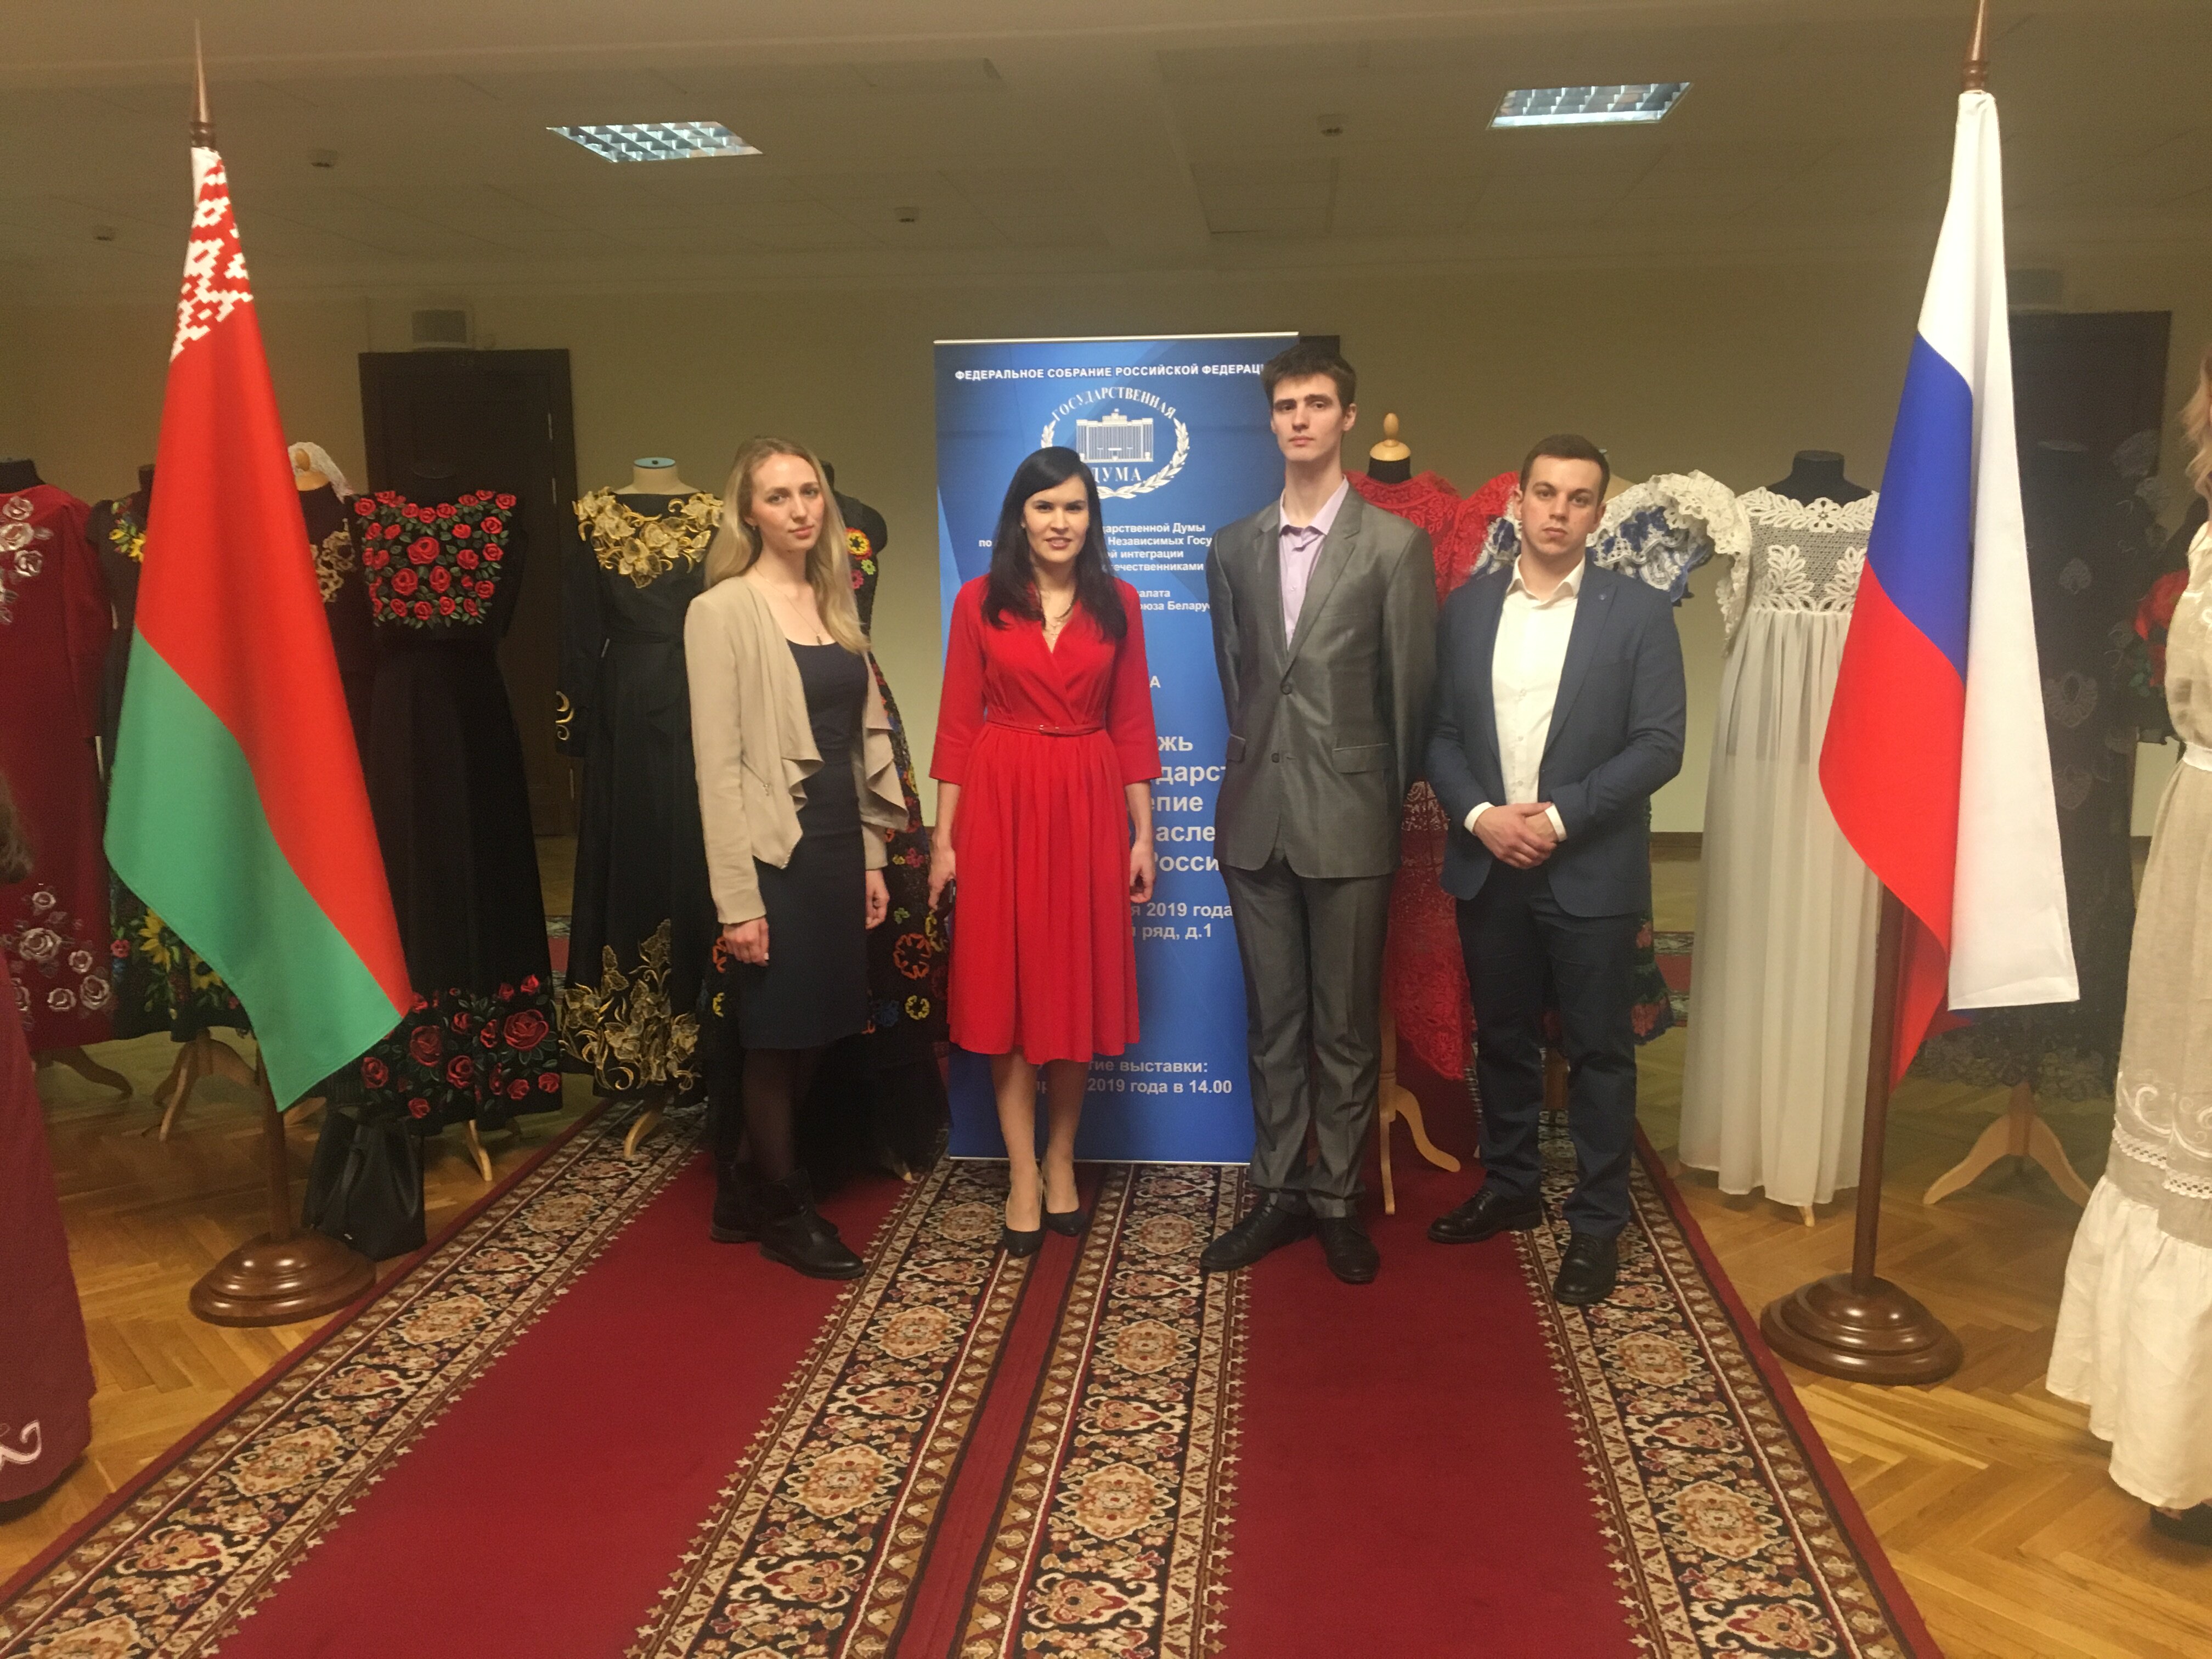 Открытие выставки «Молодежь Союзного государства: великолепие творческого наследия Беларуси и России» в Госдуме